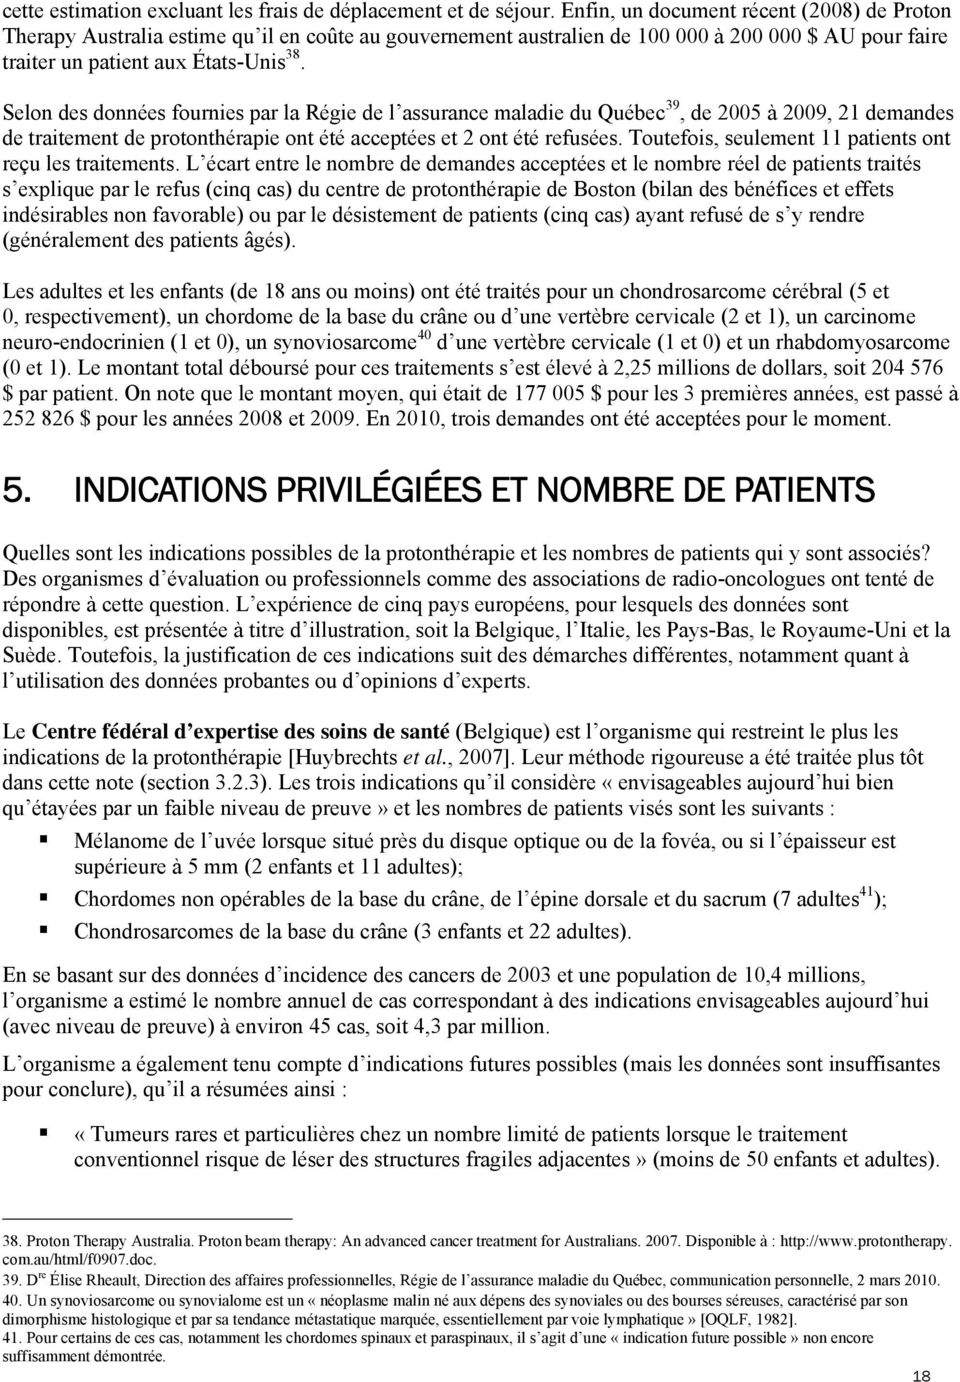 Selon des données fournies par la Régie de l assurance maladie du Québec 39, de 2005 à 2009, 21 demandes de traitement de protonthérapie ont été acceptées et 2 ont été refusées.